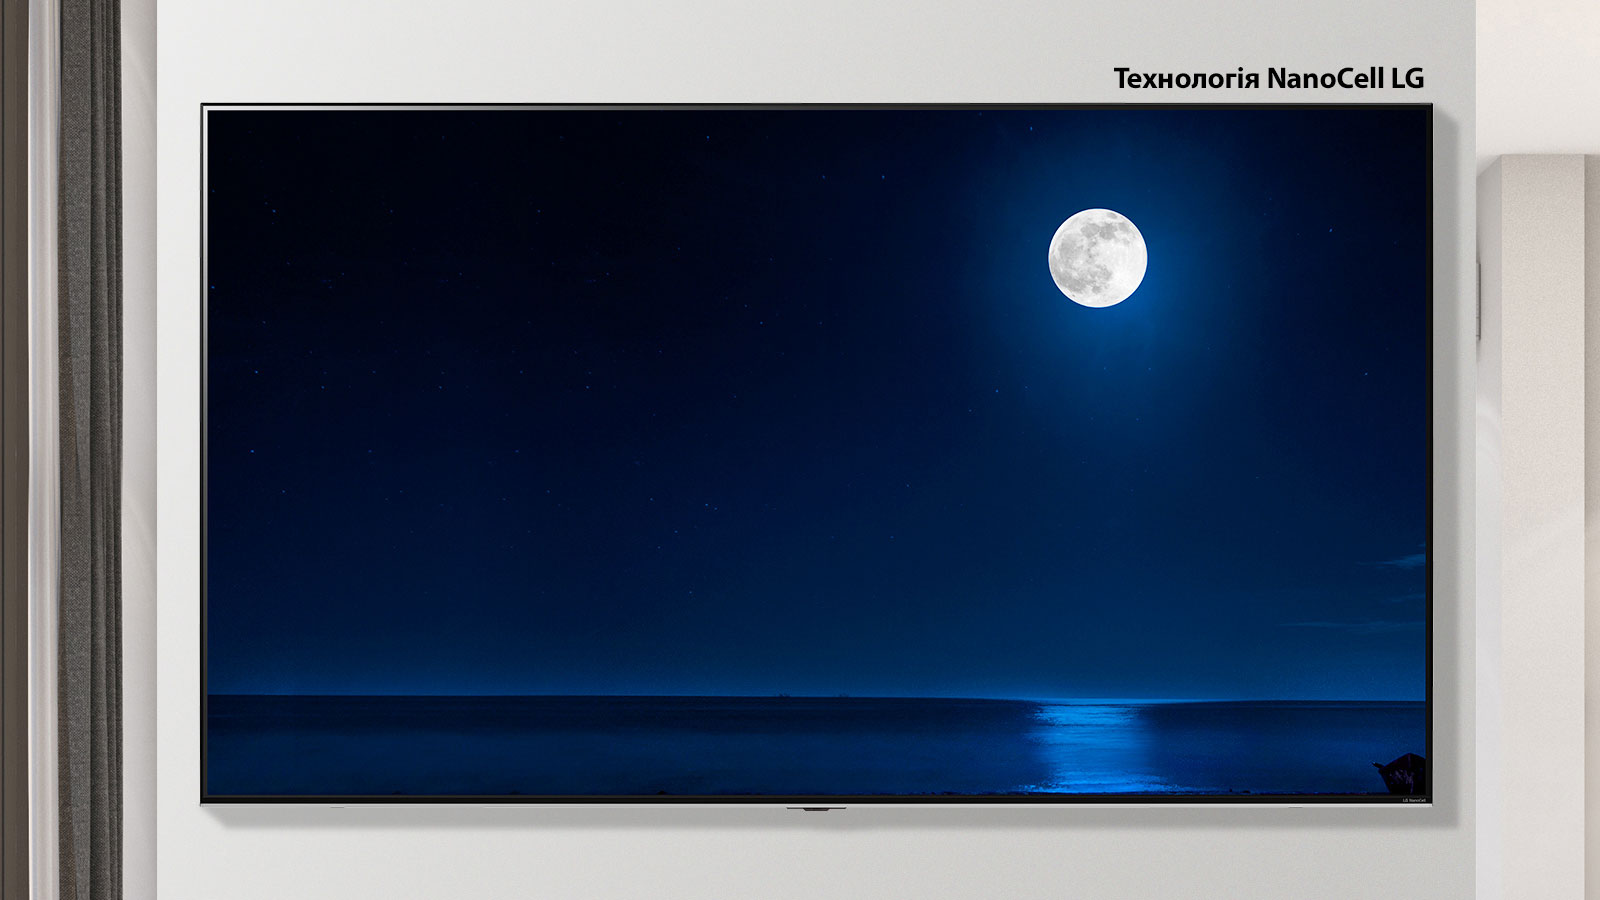 Зображення телевізора на стіні, що прокручується, на екрані якого показано темний пейзаж із повним місяцем, який відбивається у воді. У сцені чергуються телевізор звичайного розміру та телевізор LG з технологією NanoCell і великим екраном.